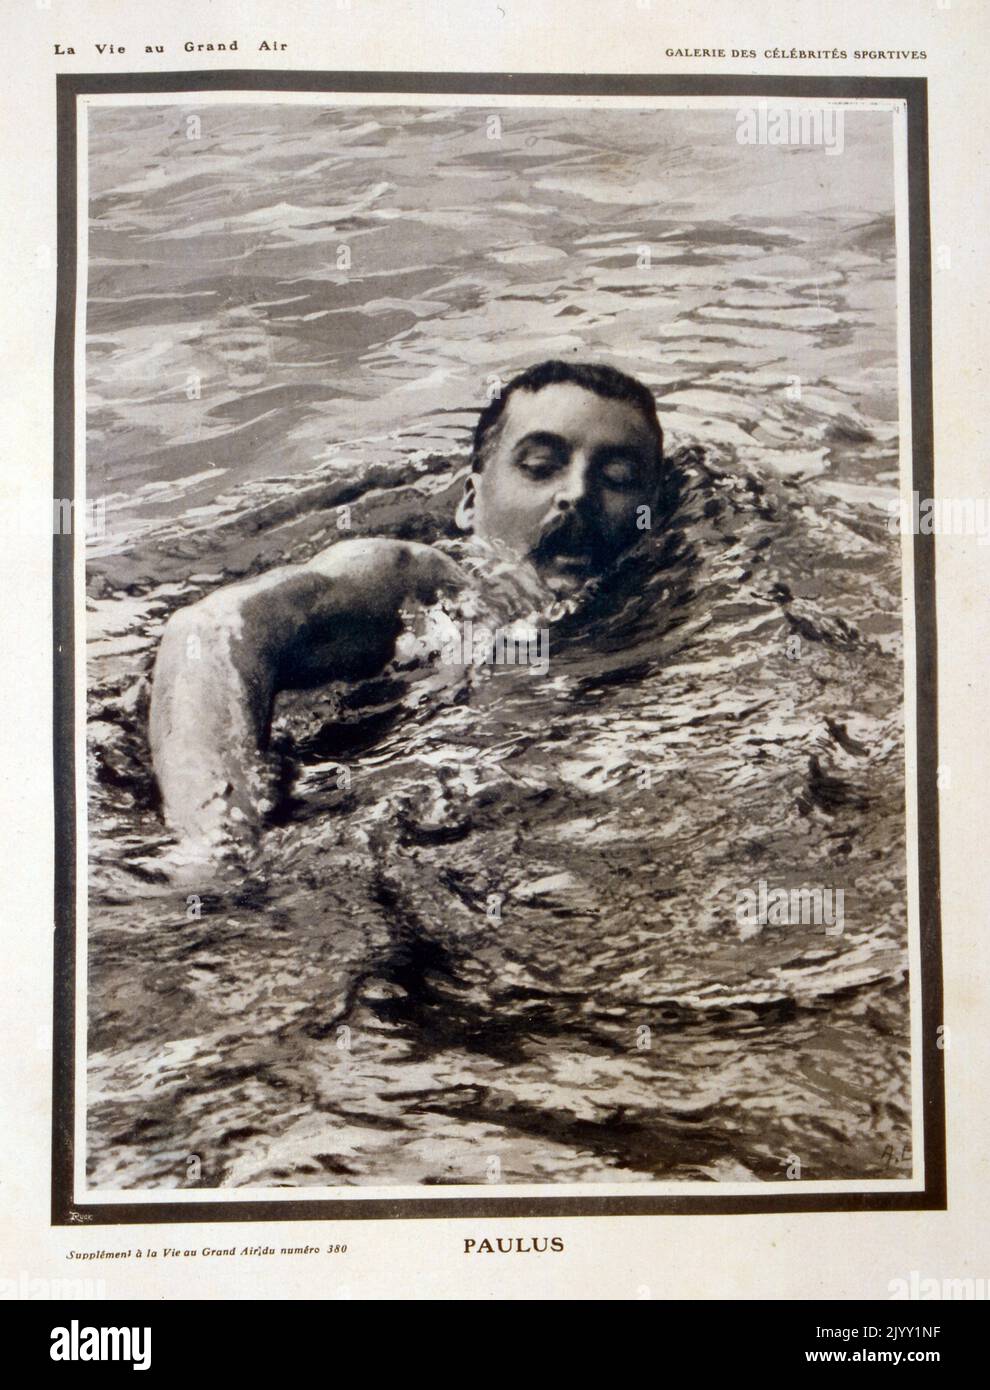 Emile Paulus, (1862 - 1938), französischer Schwimmer, der 1905 als erster Schwimmer die seine durch Paris schwimmt. Stockfoto